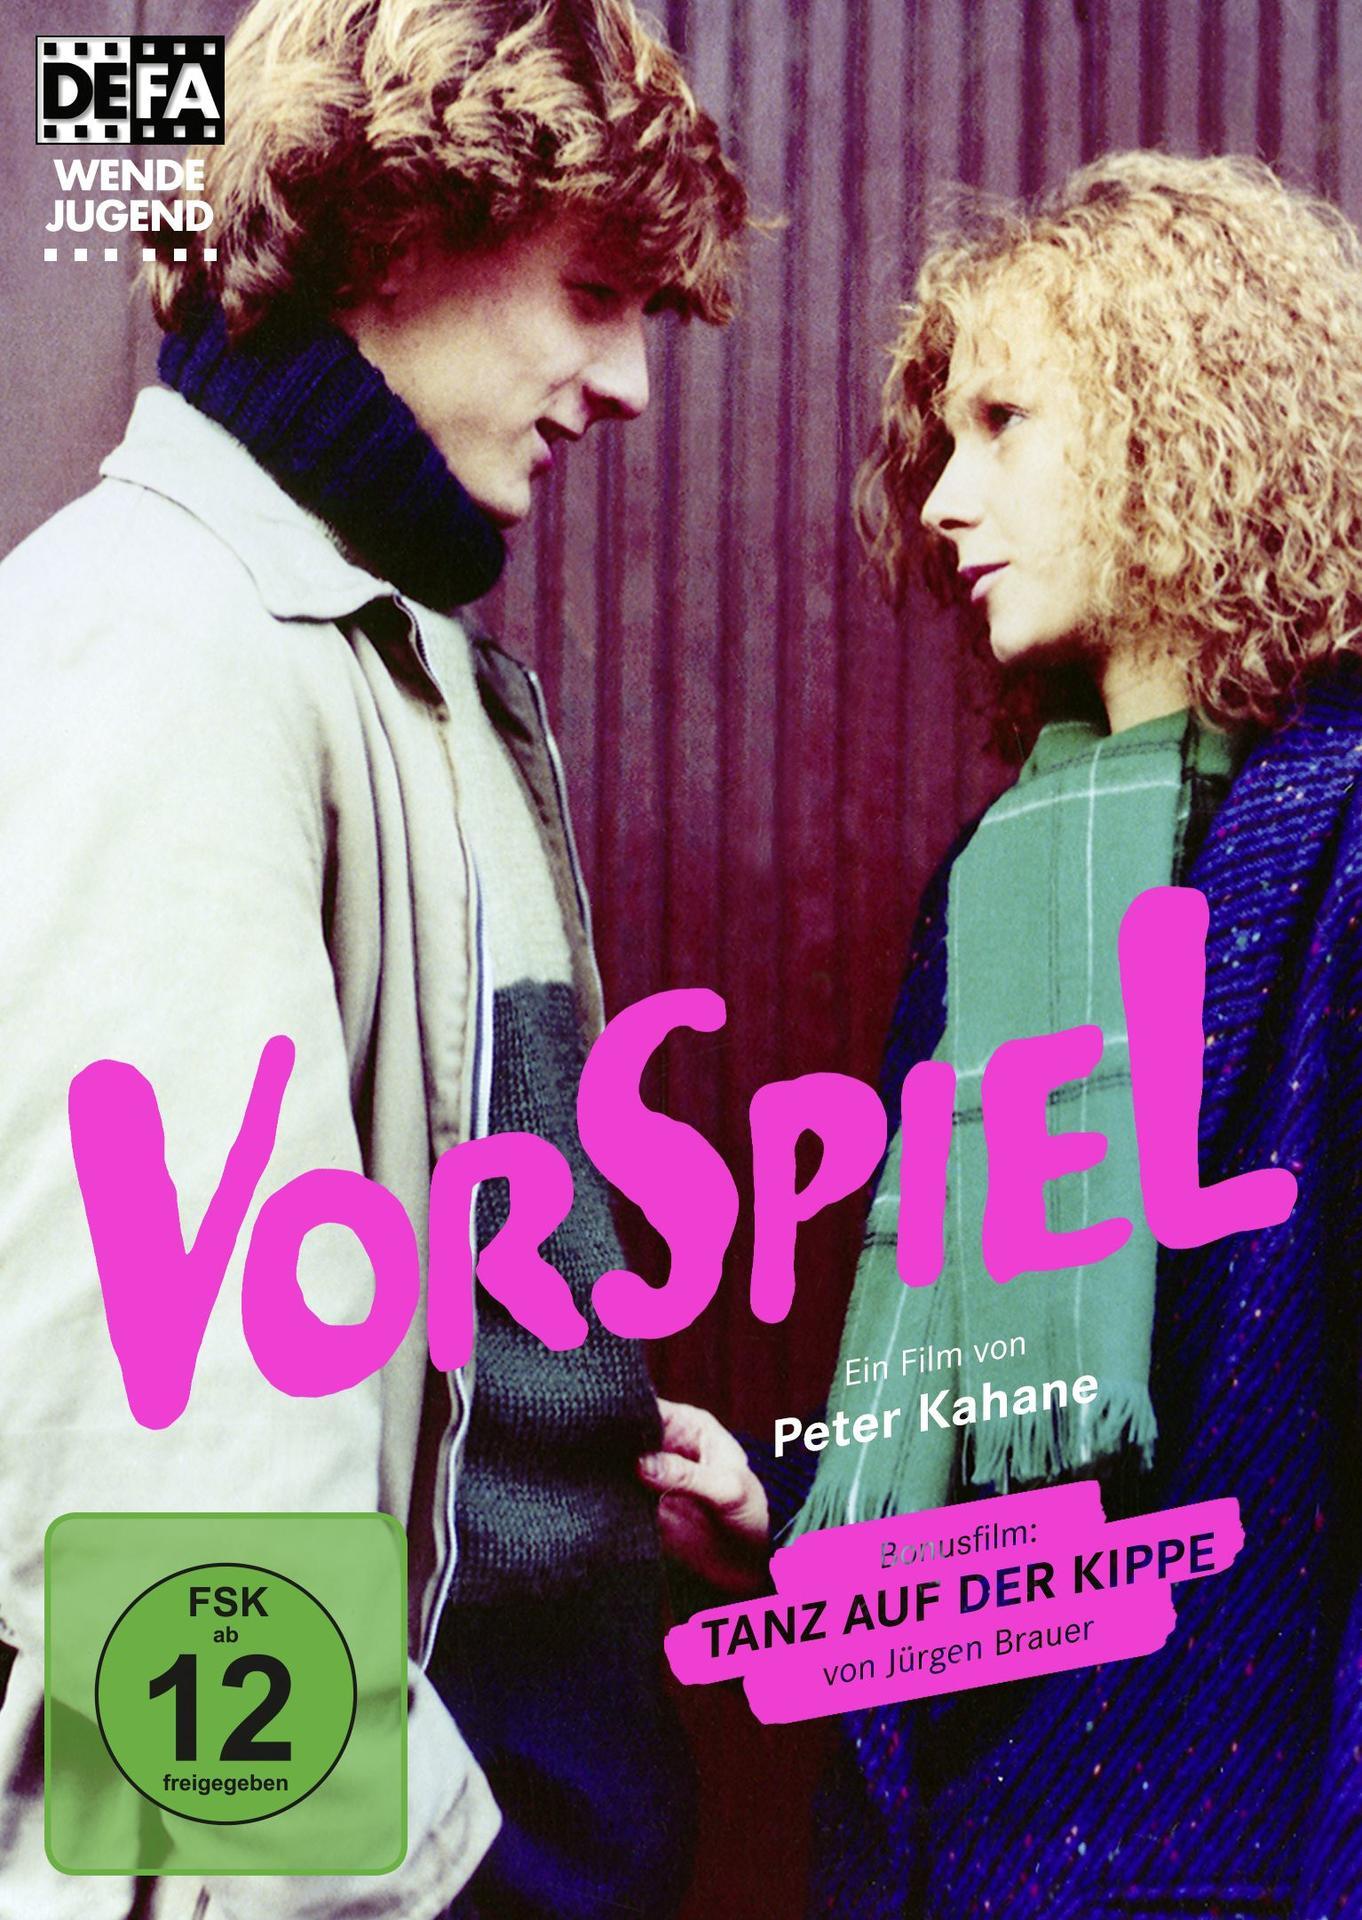 Jürgen Bonusfilm Tanz (inkl. der DVD Brauer) Kippe auf von Vorspiel